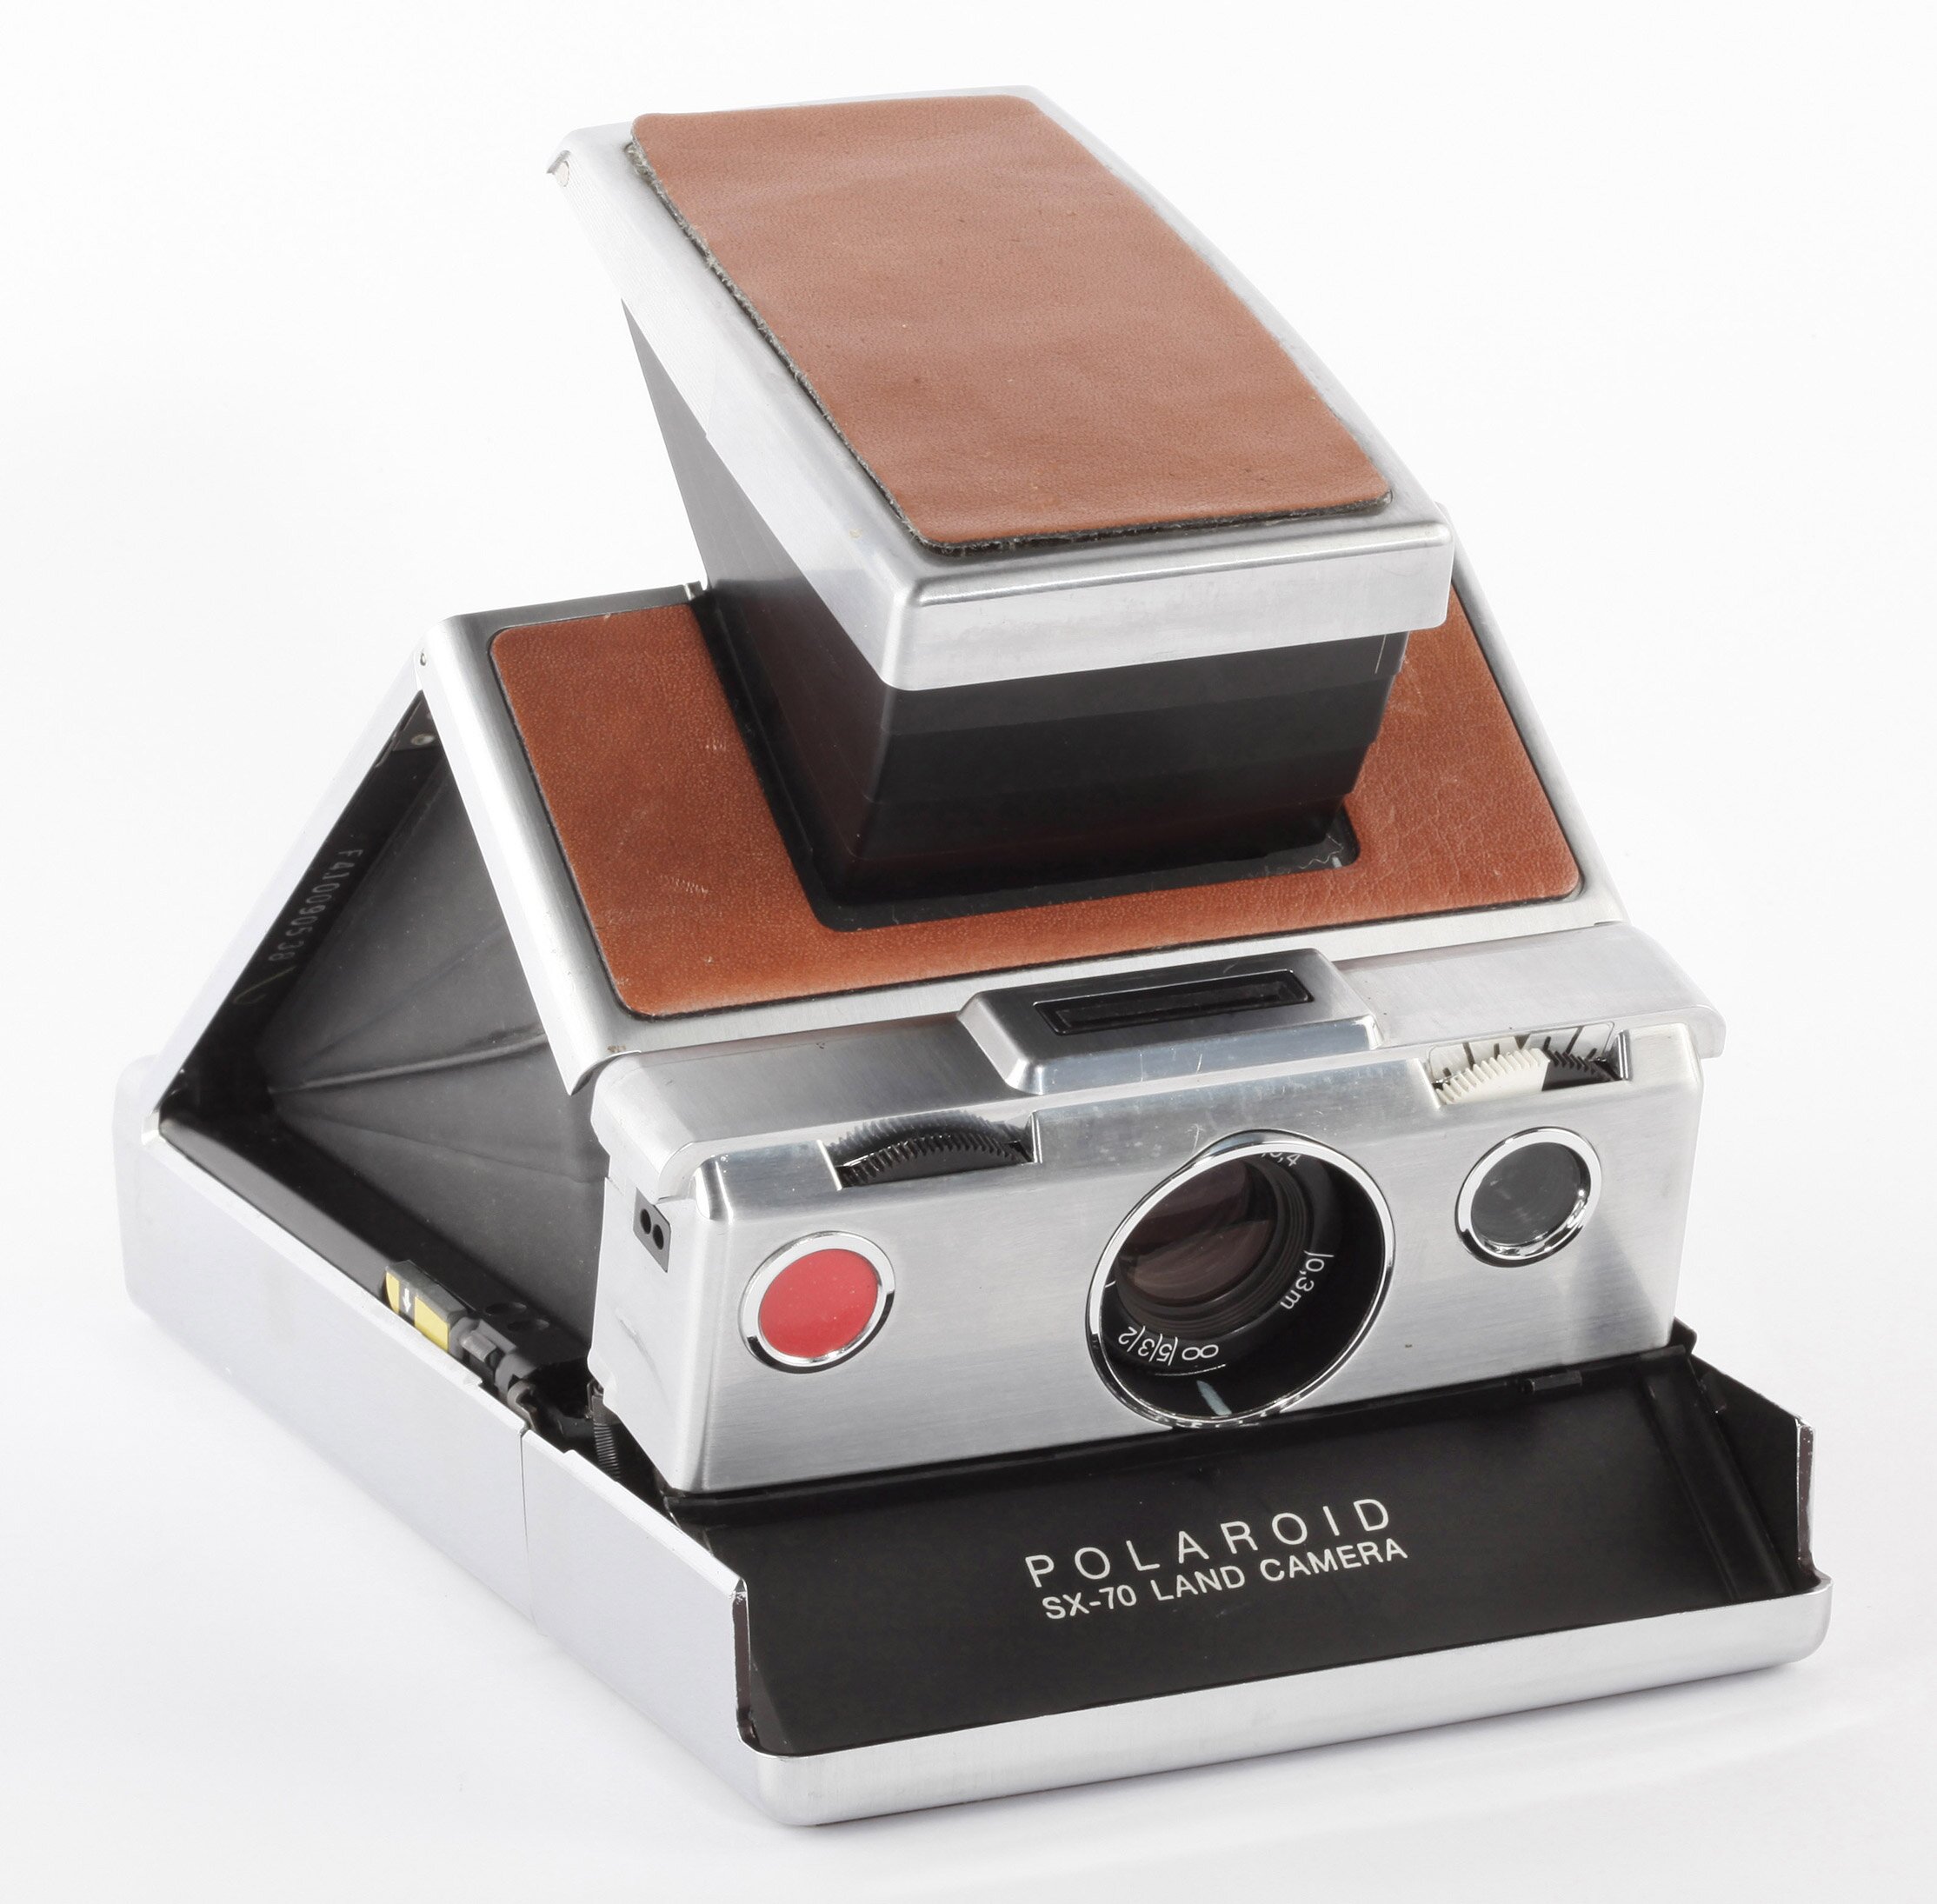 Polaroid SX 70